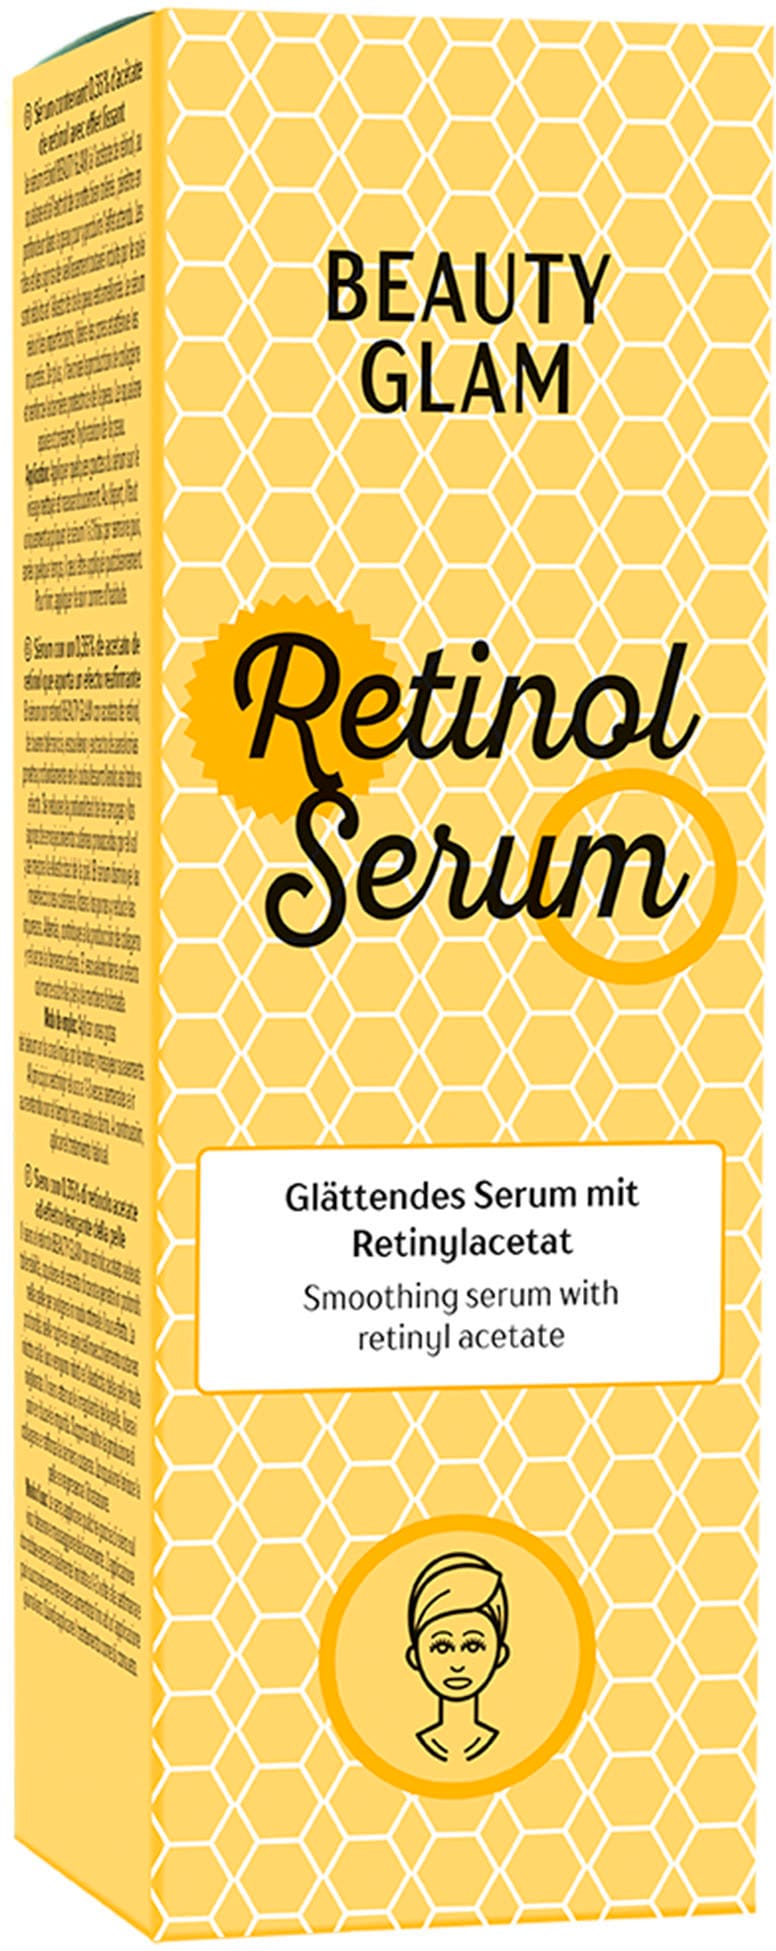 BEAUTY Serum« GLAM Gesichtsserum »Retinol Shop Online im OTTO